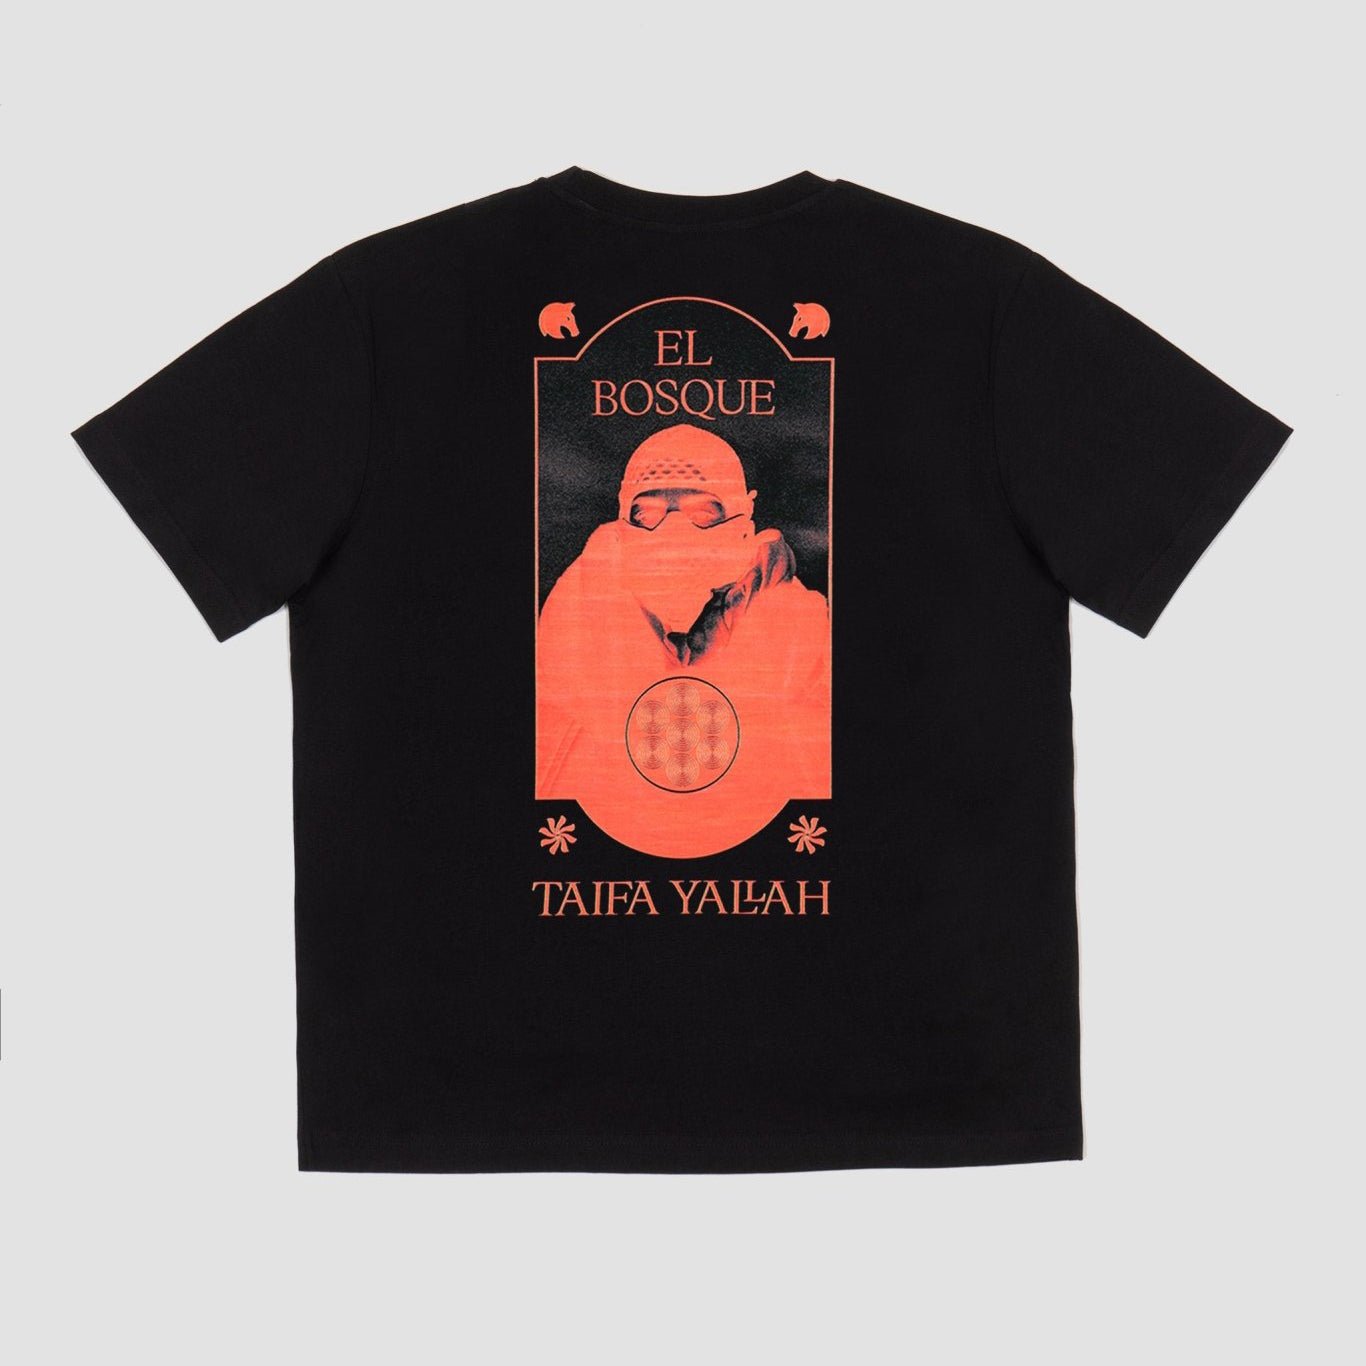 Taifa Yallah, Camiseta El Bosque